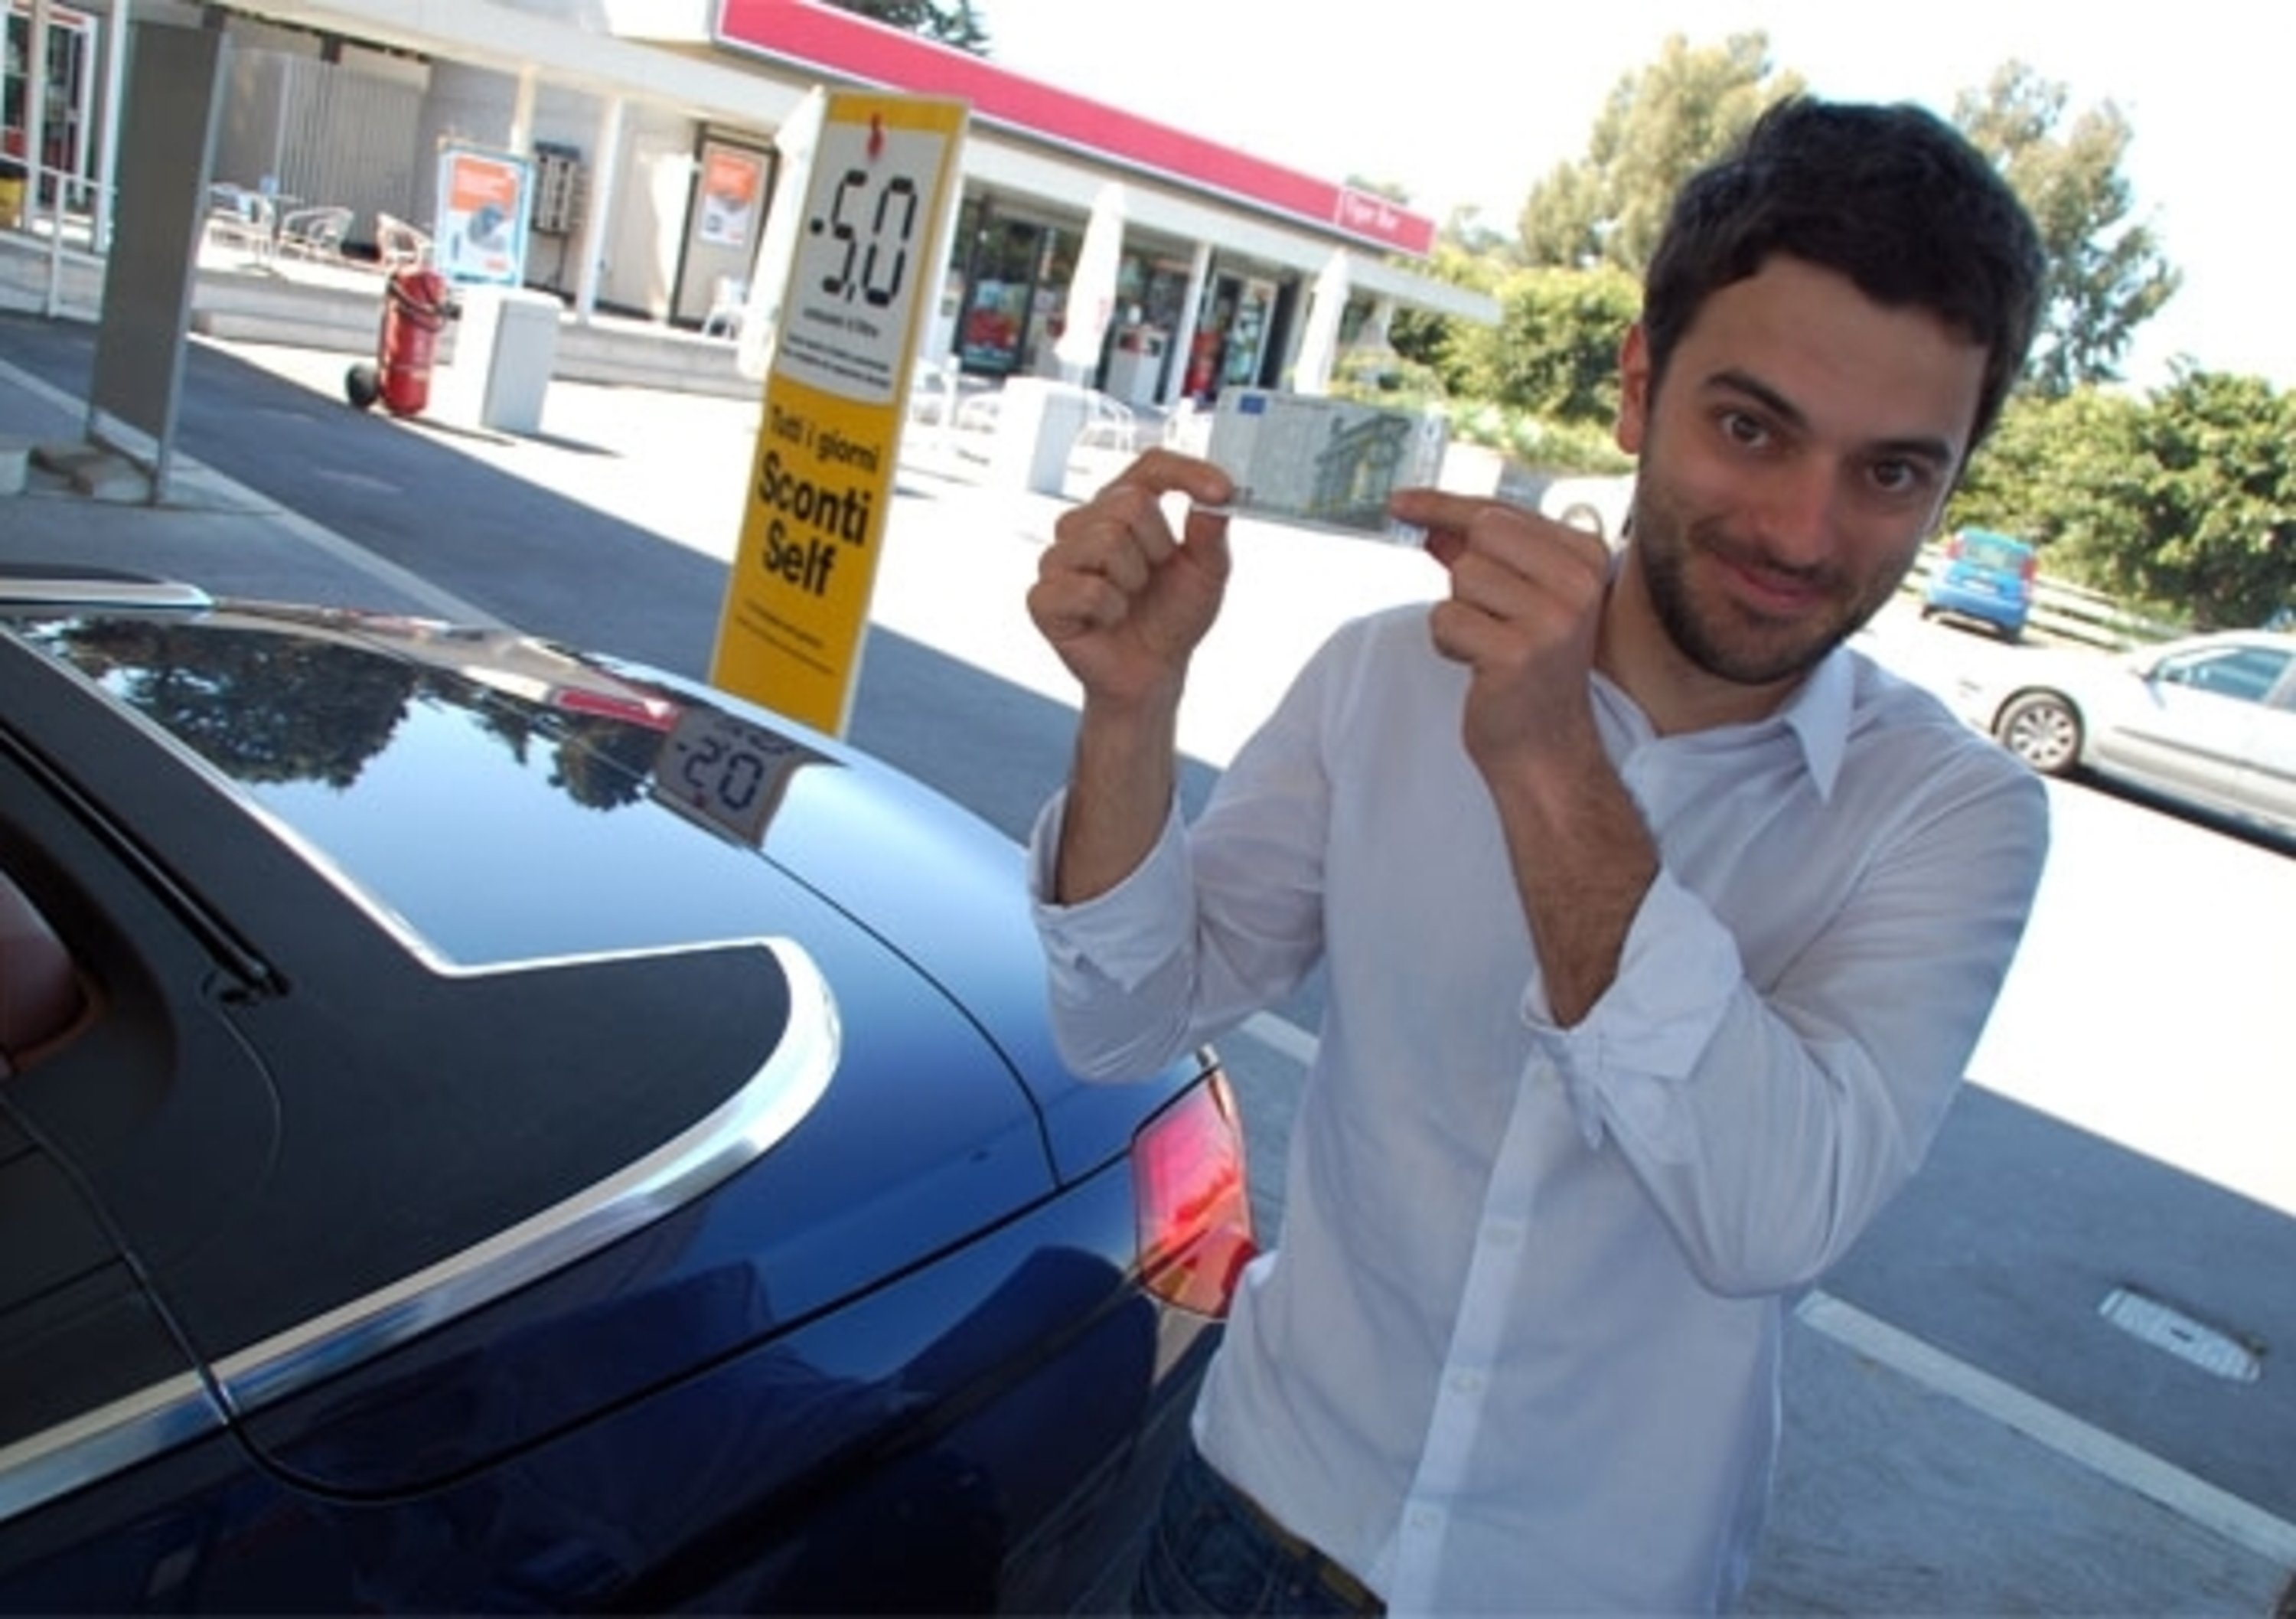 Benzina a 1,9 euro/litro: Federauto prende posizione